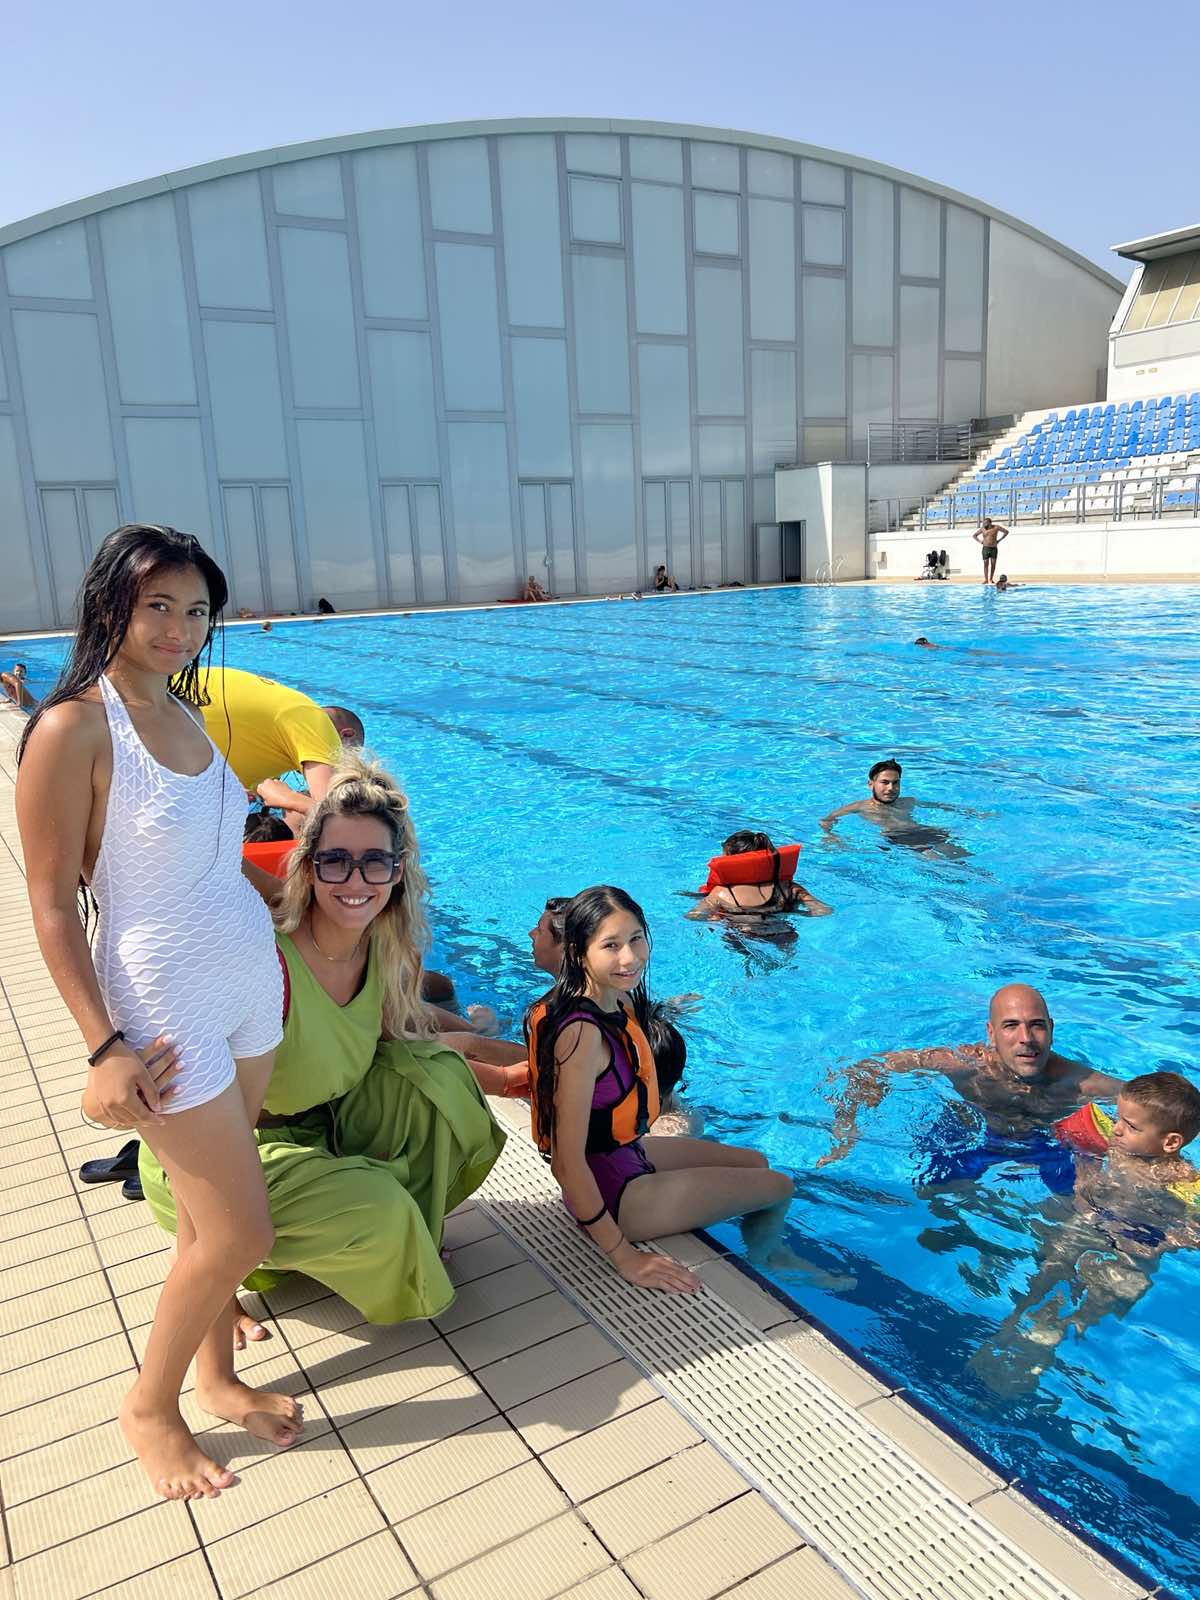 Kancelarija za RE nastavlja da radi na socijalnoj inkluziji; Na gradskim bazenima organizovana obuka i druženje za 20 pripadnika romske zajednice